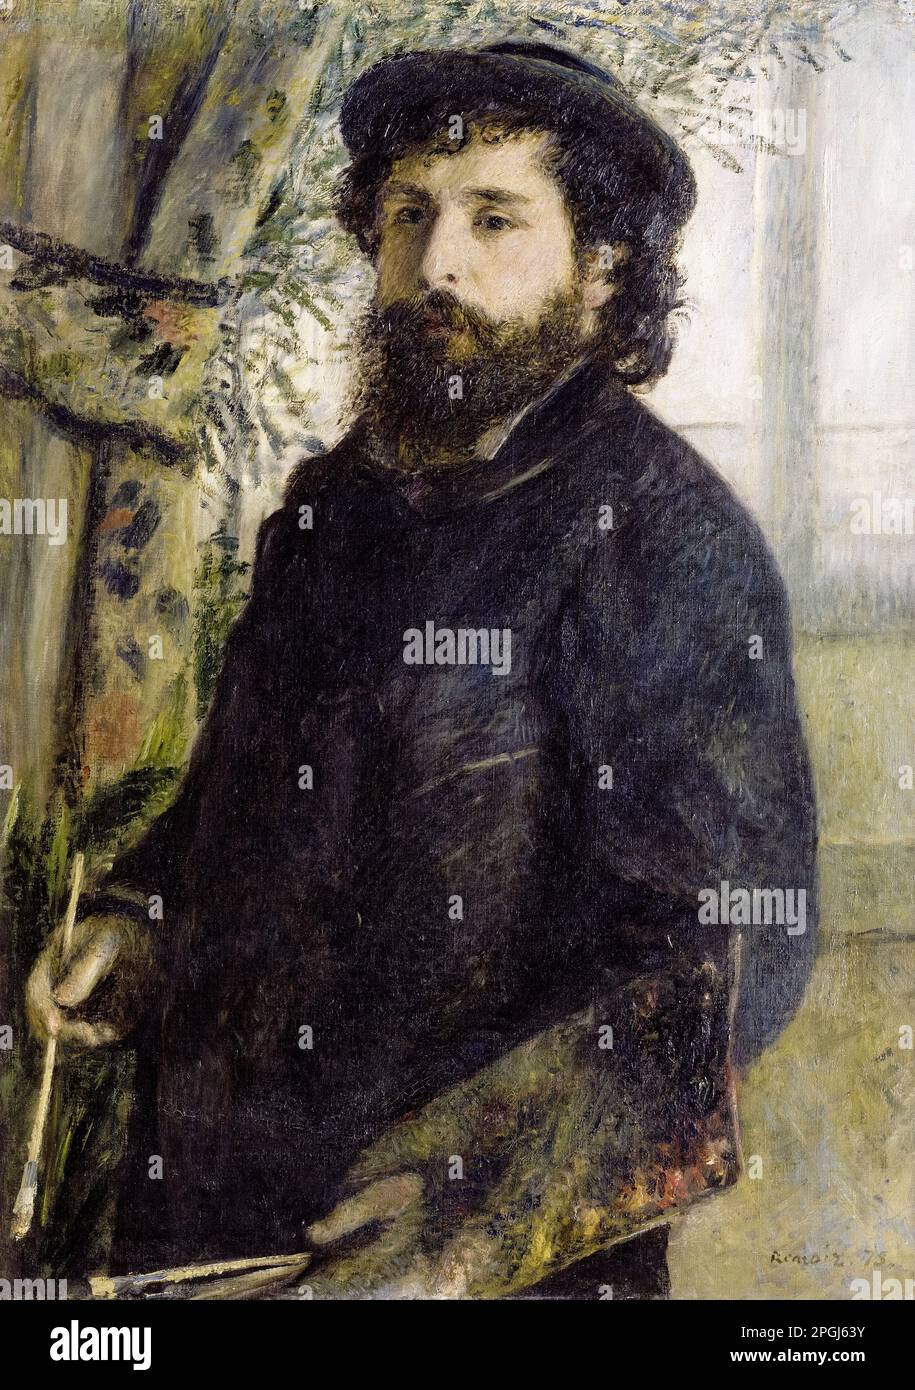 Portrait de Claude Monet (1840-1926), peinture à l'huile sur toile par Pierre Auguste Renoir, 1875 Banque D'Images